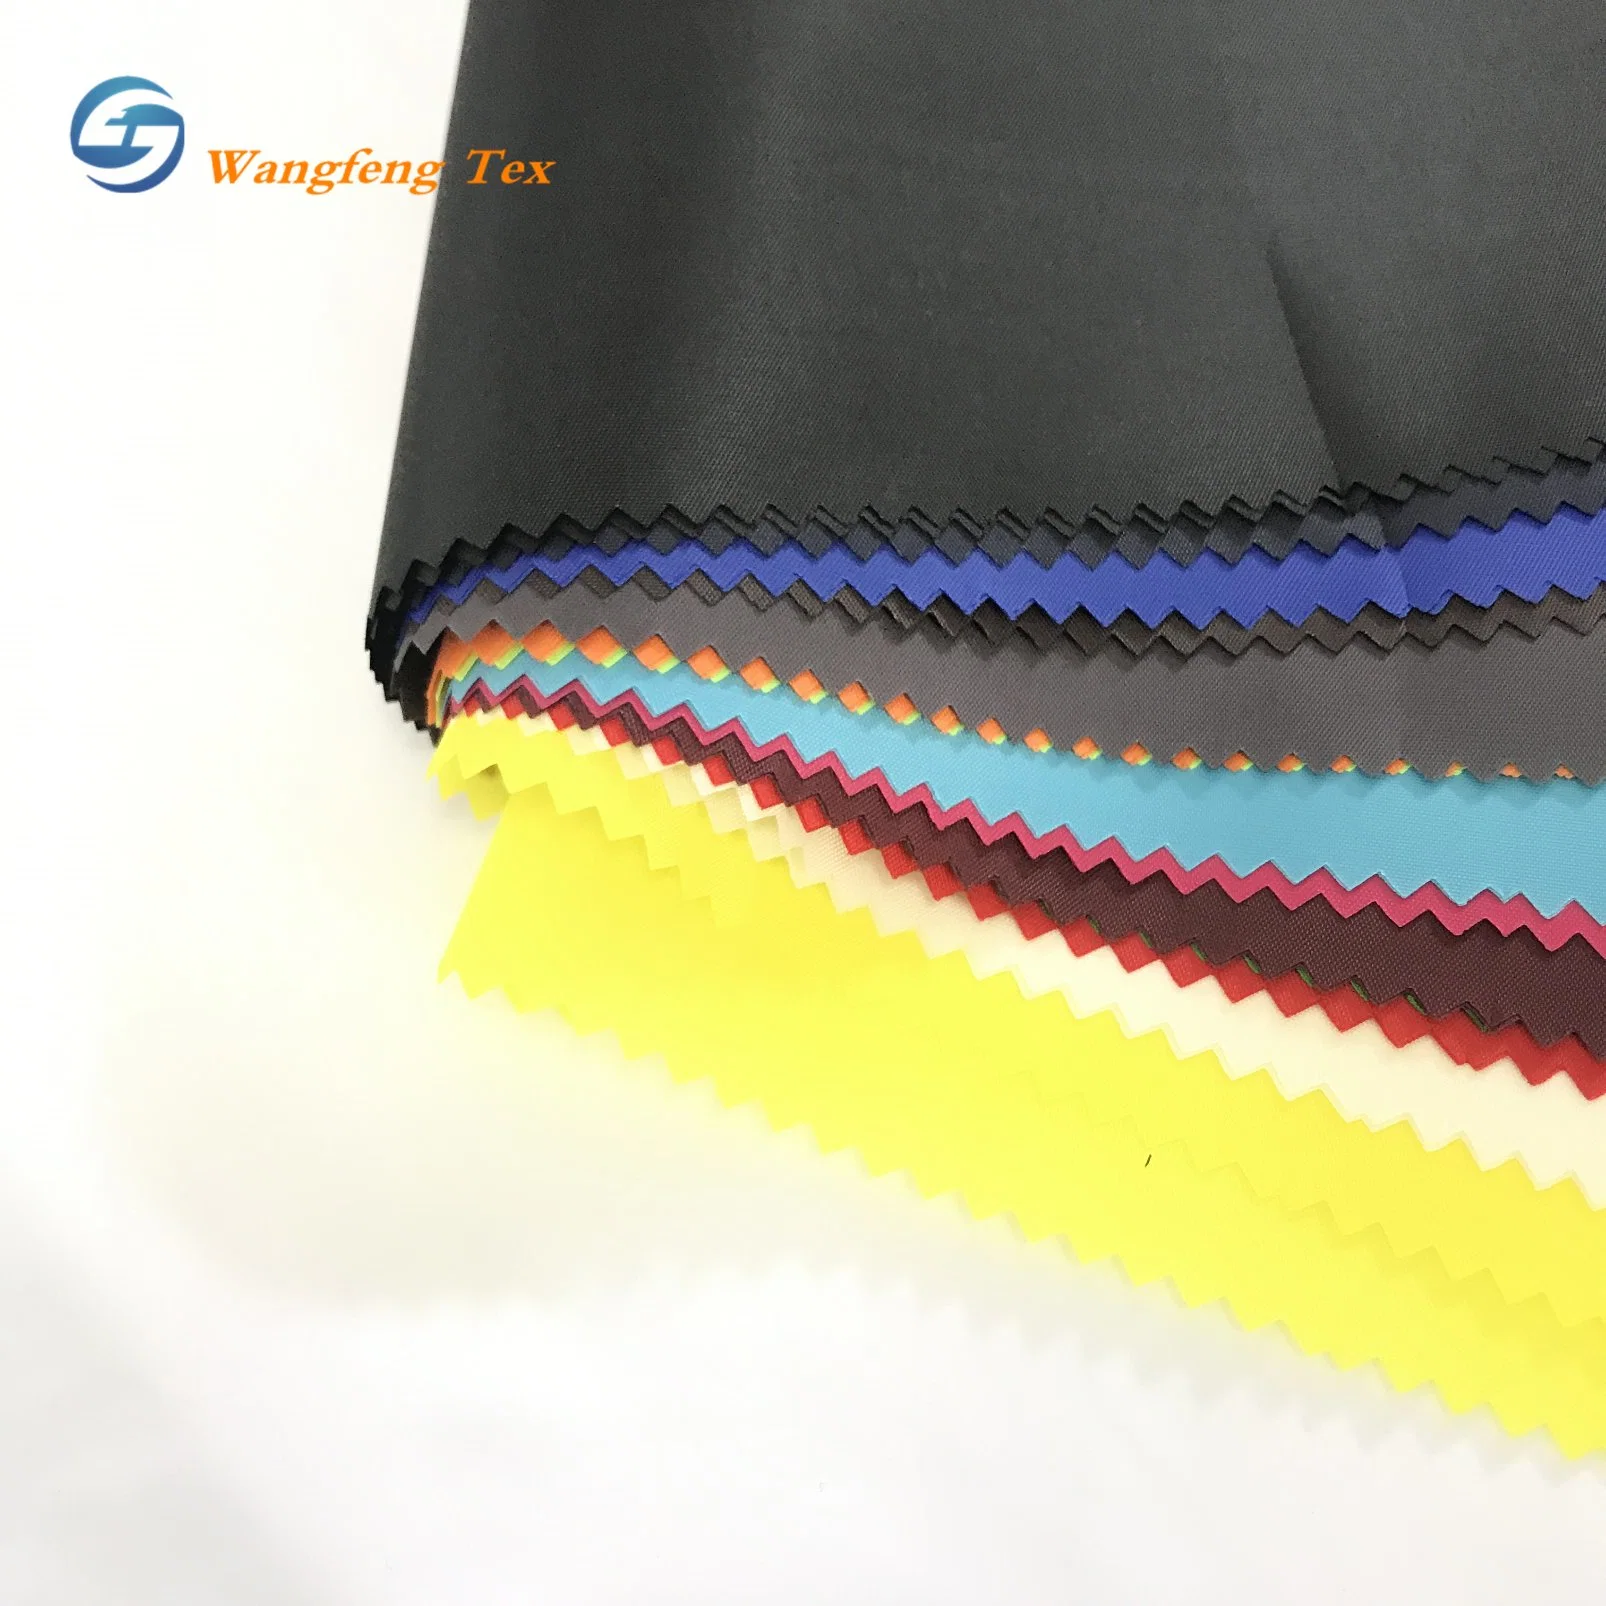 Цветная ткань с фасоком и тканевой покрытием из ткани с покрытием из ткани Paceock Taffeta 170 т, полиэстер, 68 см 8kg дешево Pongi для подкладки мешков Индия рынка